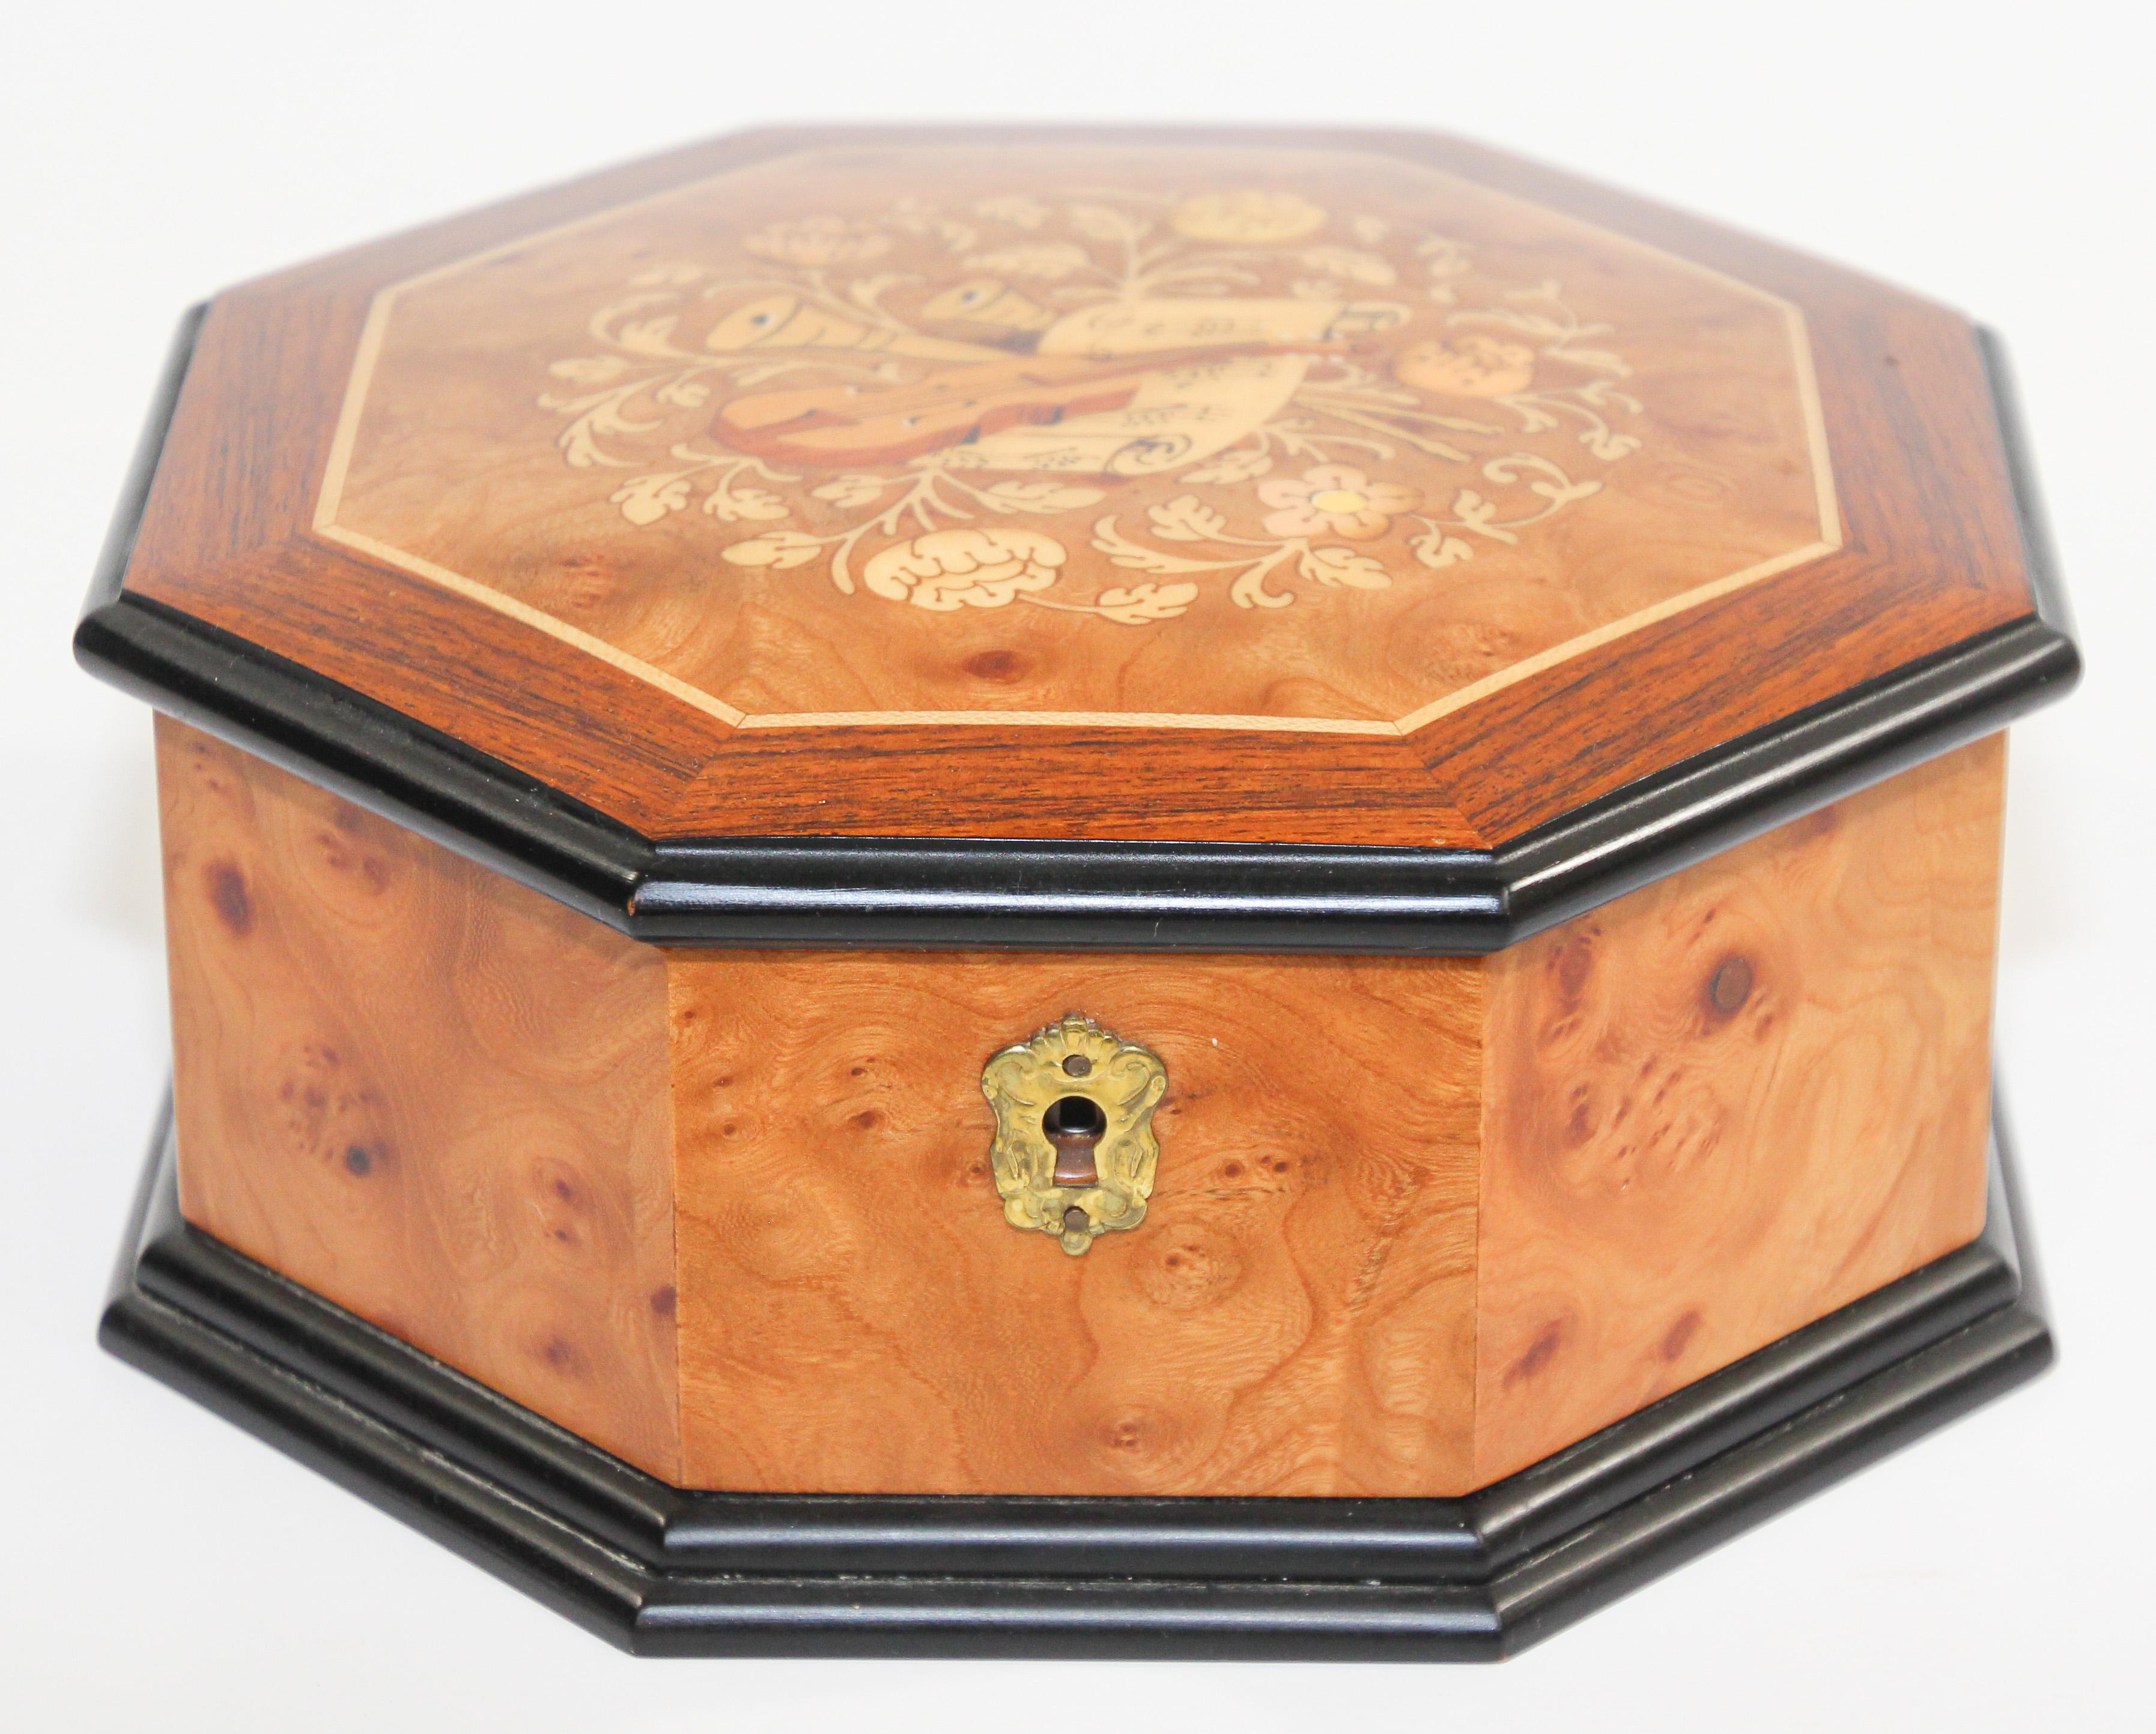 Elégante boîte à musique octogonale en bois de thuya.
L'arbre Thuya est célèbre pour les riches teintes dorées et brunes de son grain et pour son parfum exotique unique, semblable à celui du cèdre.
Doublé de velours brun.
Plateau en bois précieux